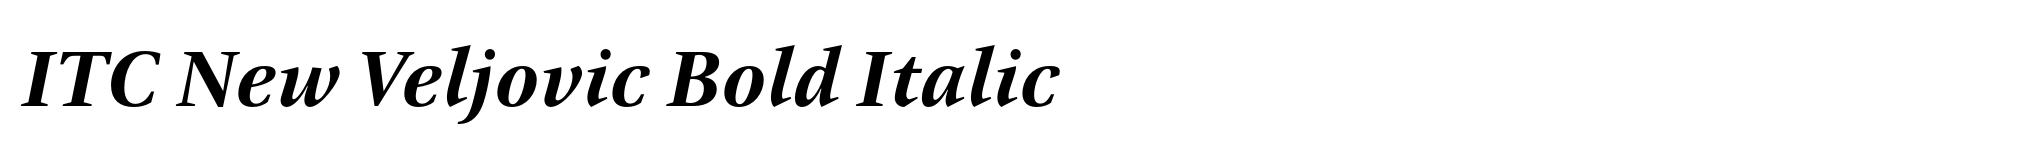 ITC New Veljovic Bold Italic image